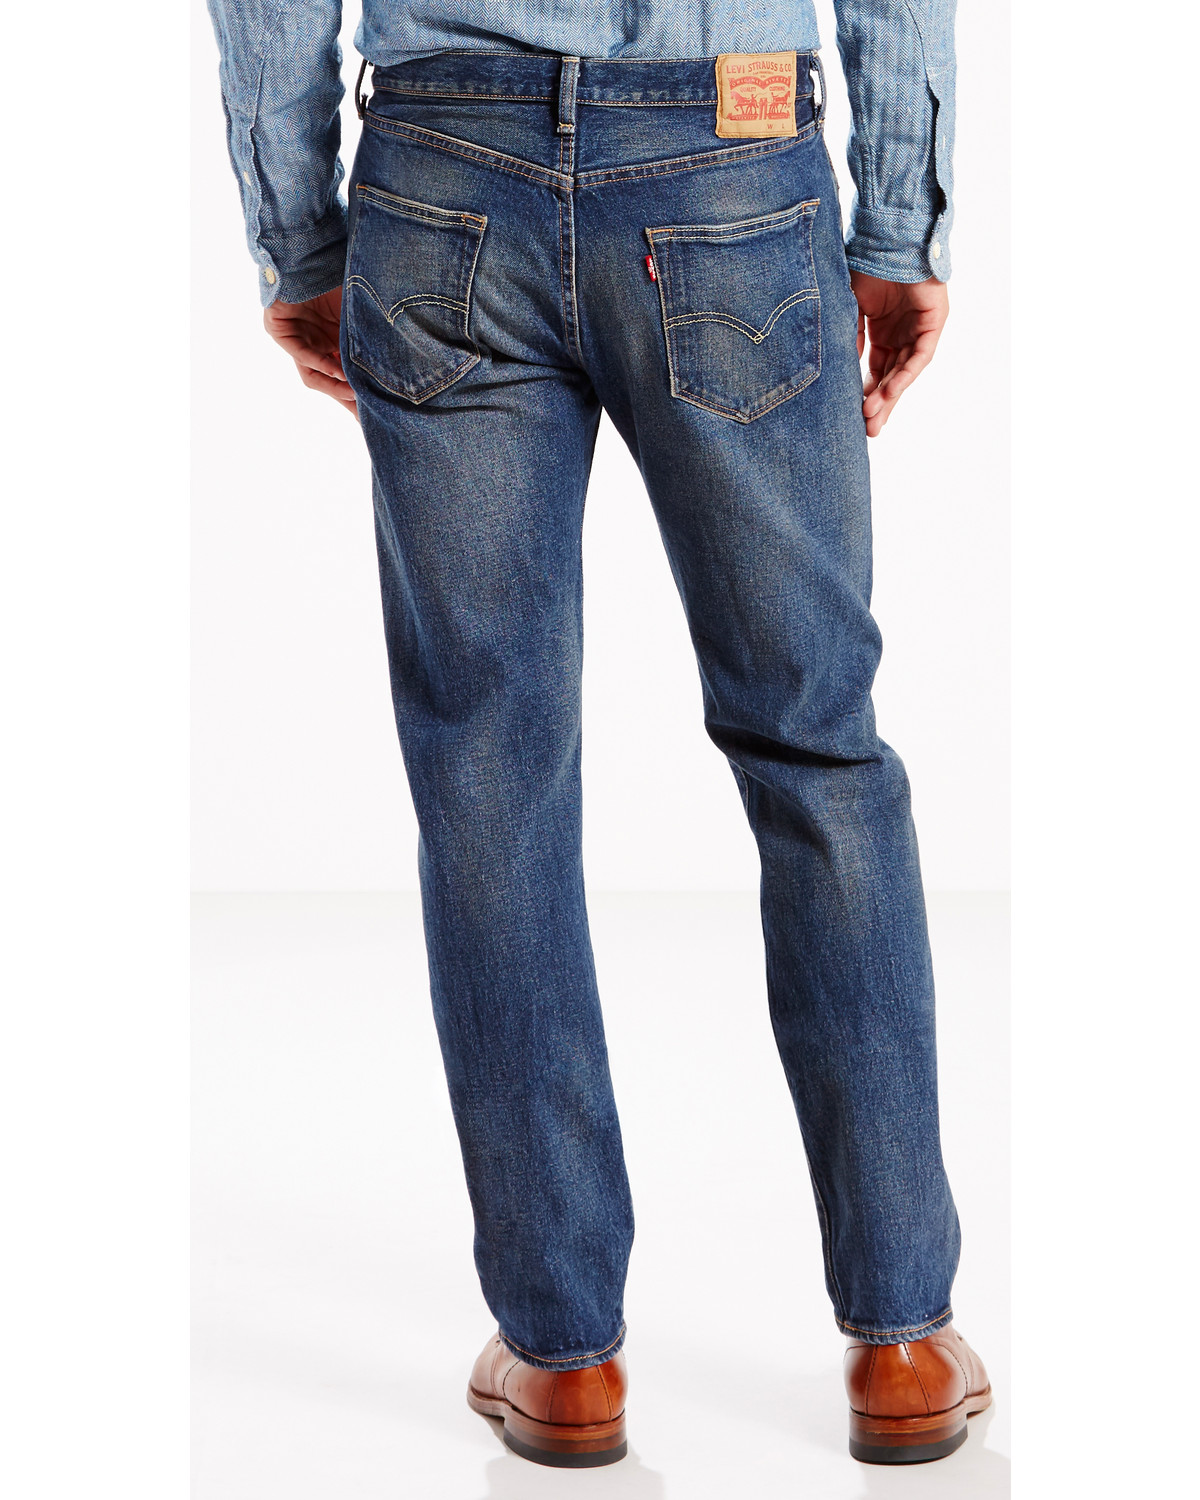 levi 501 mens jeans